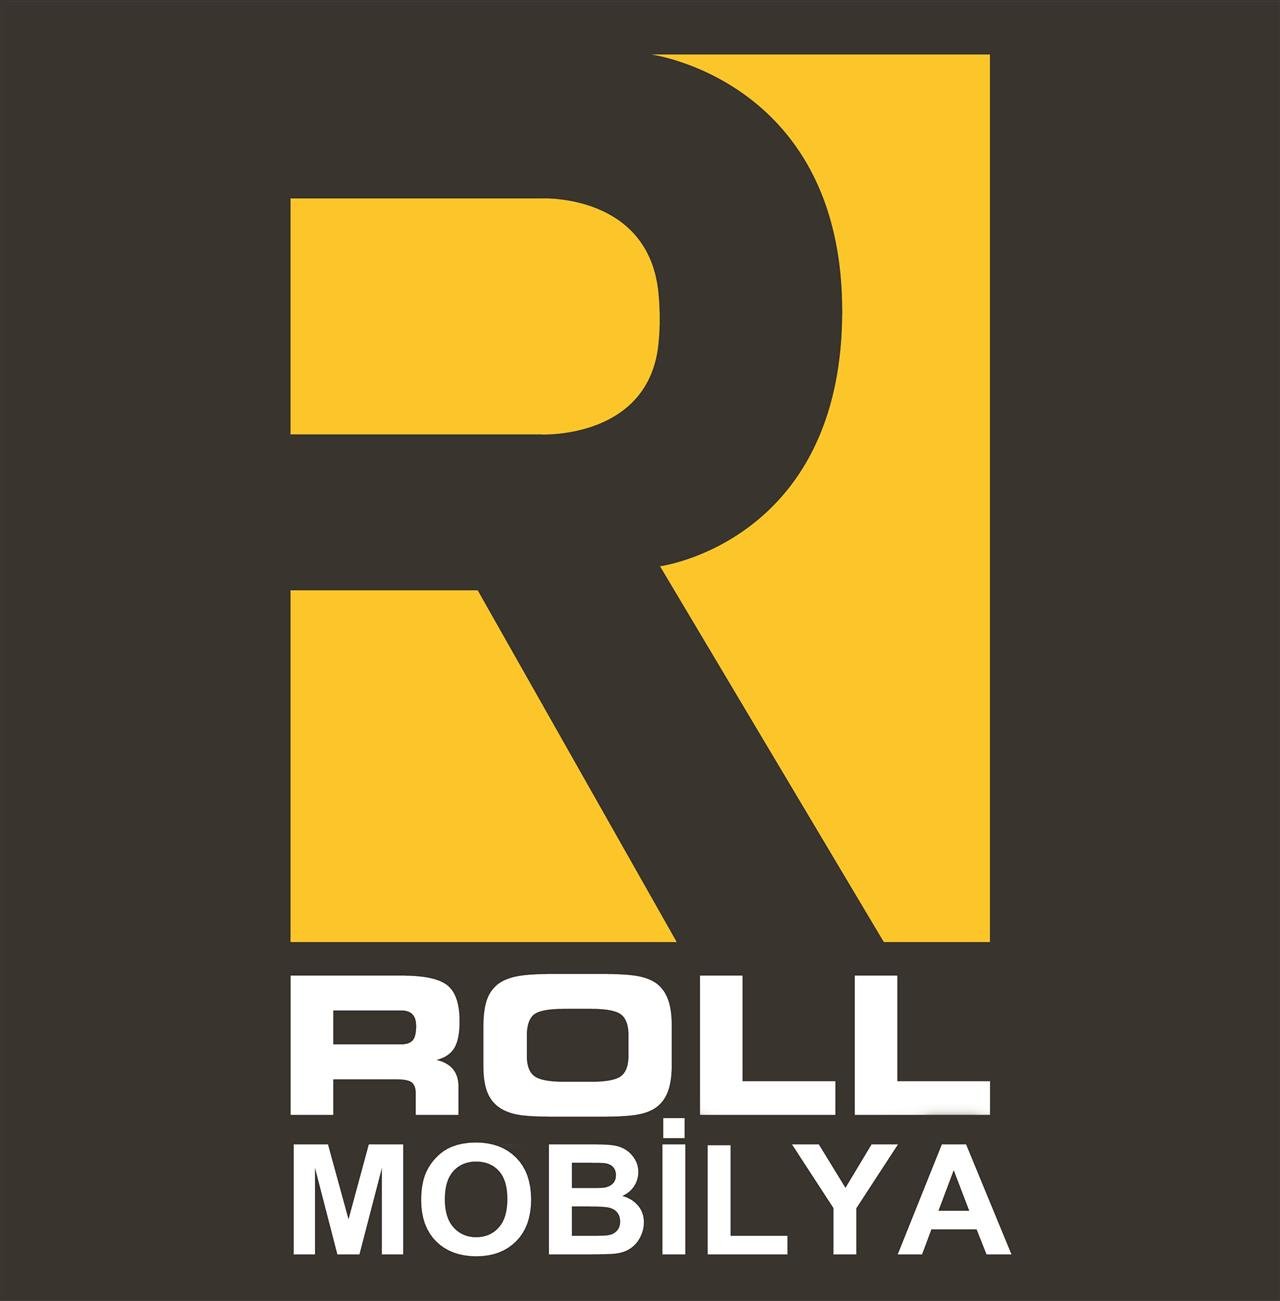 Roll Mobilya